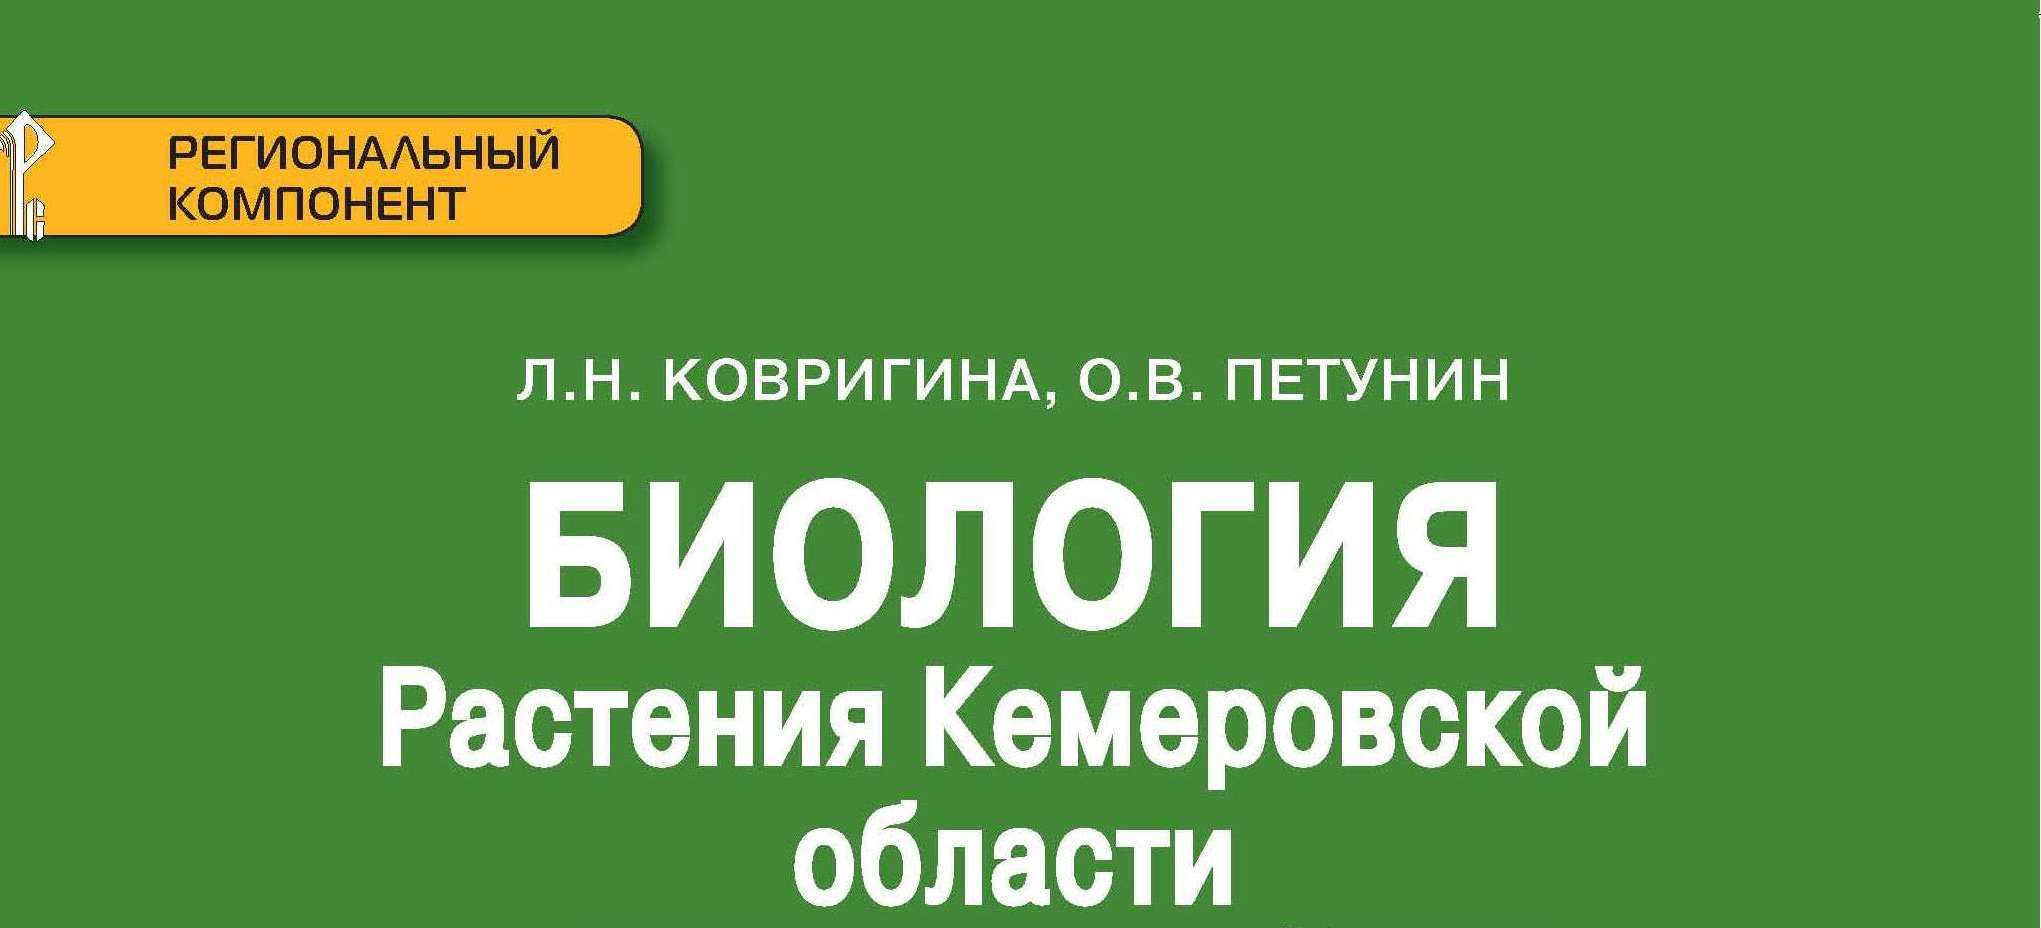 Школьники Кемеровской области будут заниматься по учебникам, выпущенным к 300-летию образования Кузбасса